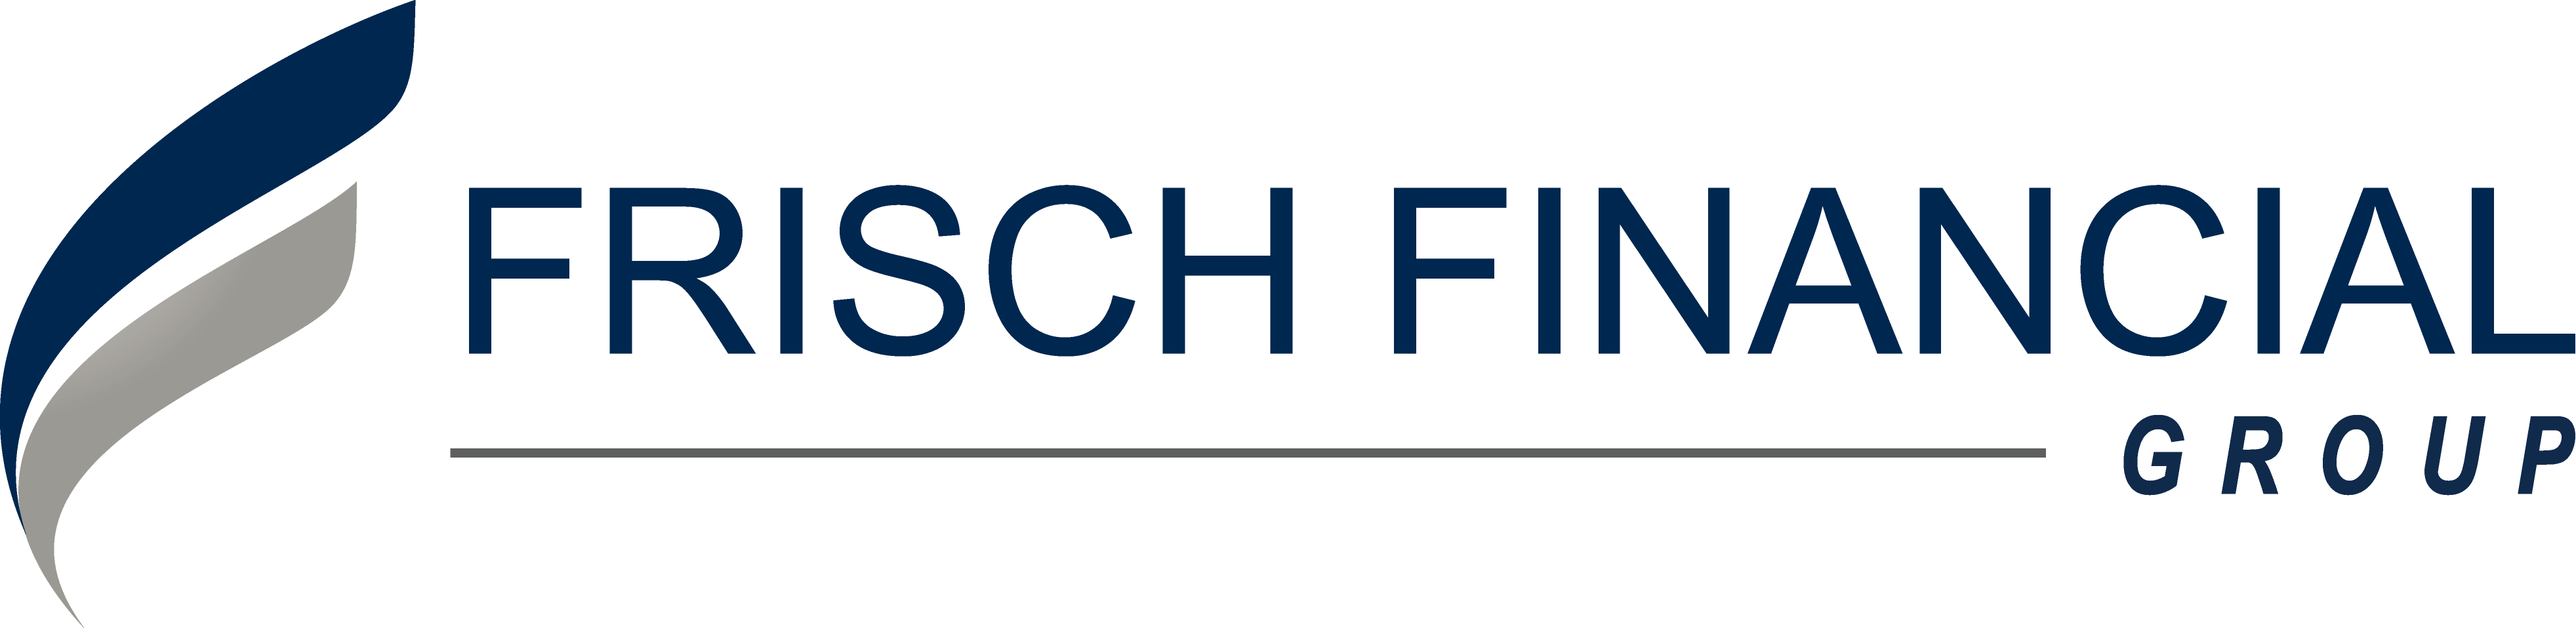 Frisch Financial Group, Inc.